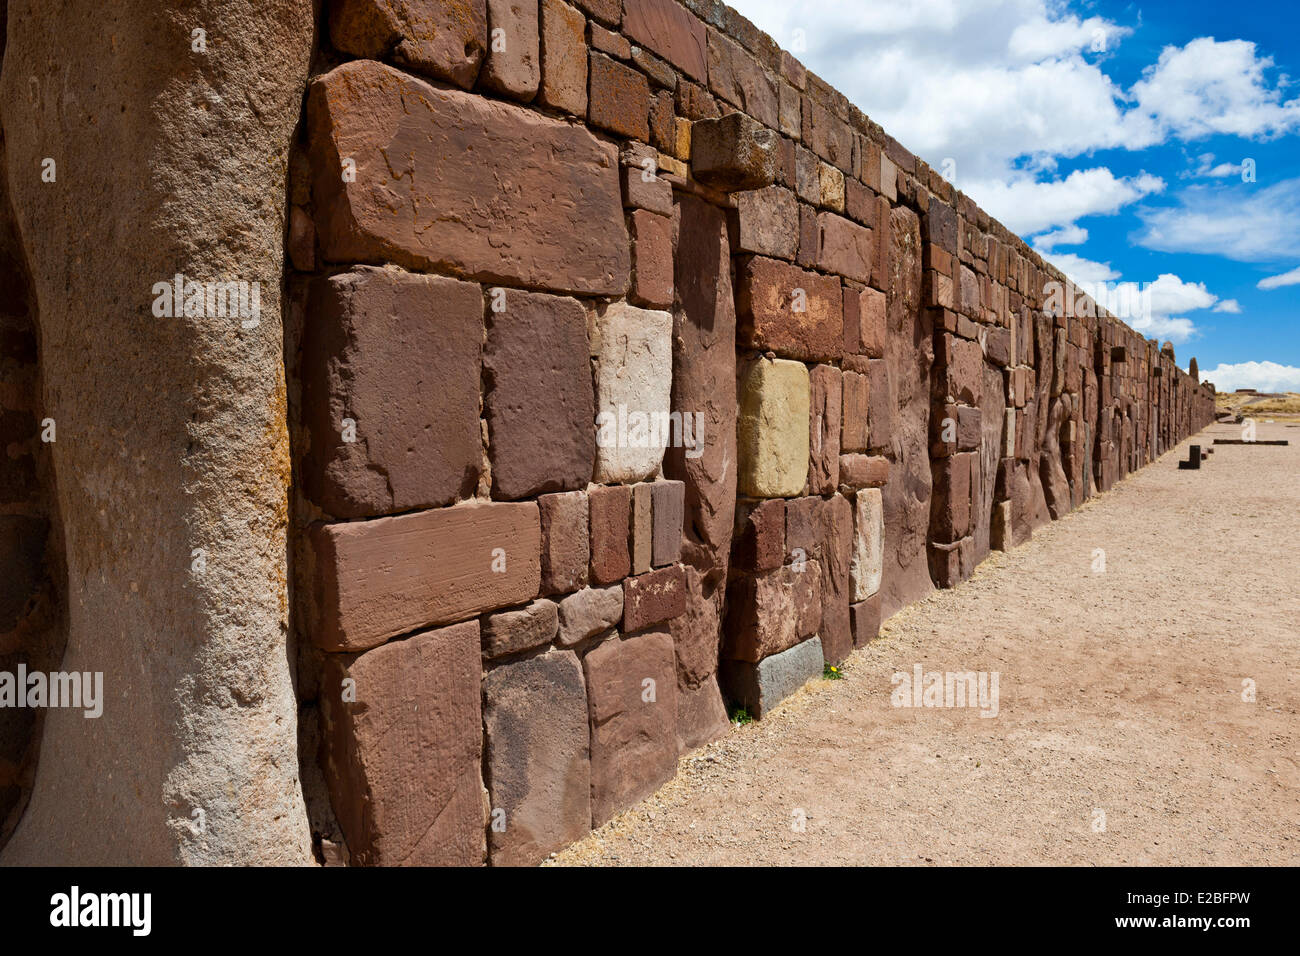 Bolivie La Paz Tiwanaku Ministère Pre-Inca site archéologique de Kalassaya stonewall UNESCO Observatoire astronomique du temple Banque D'Images